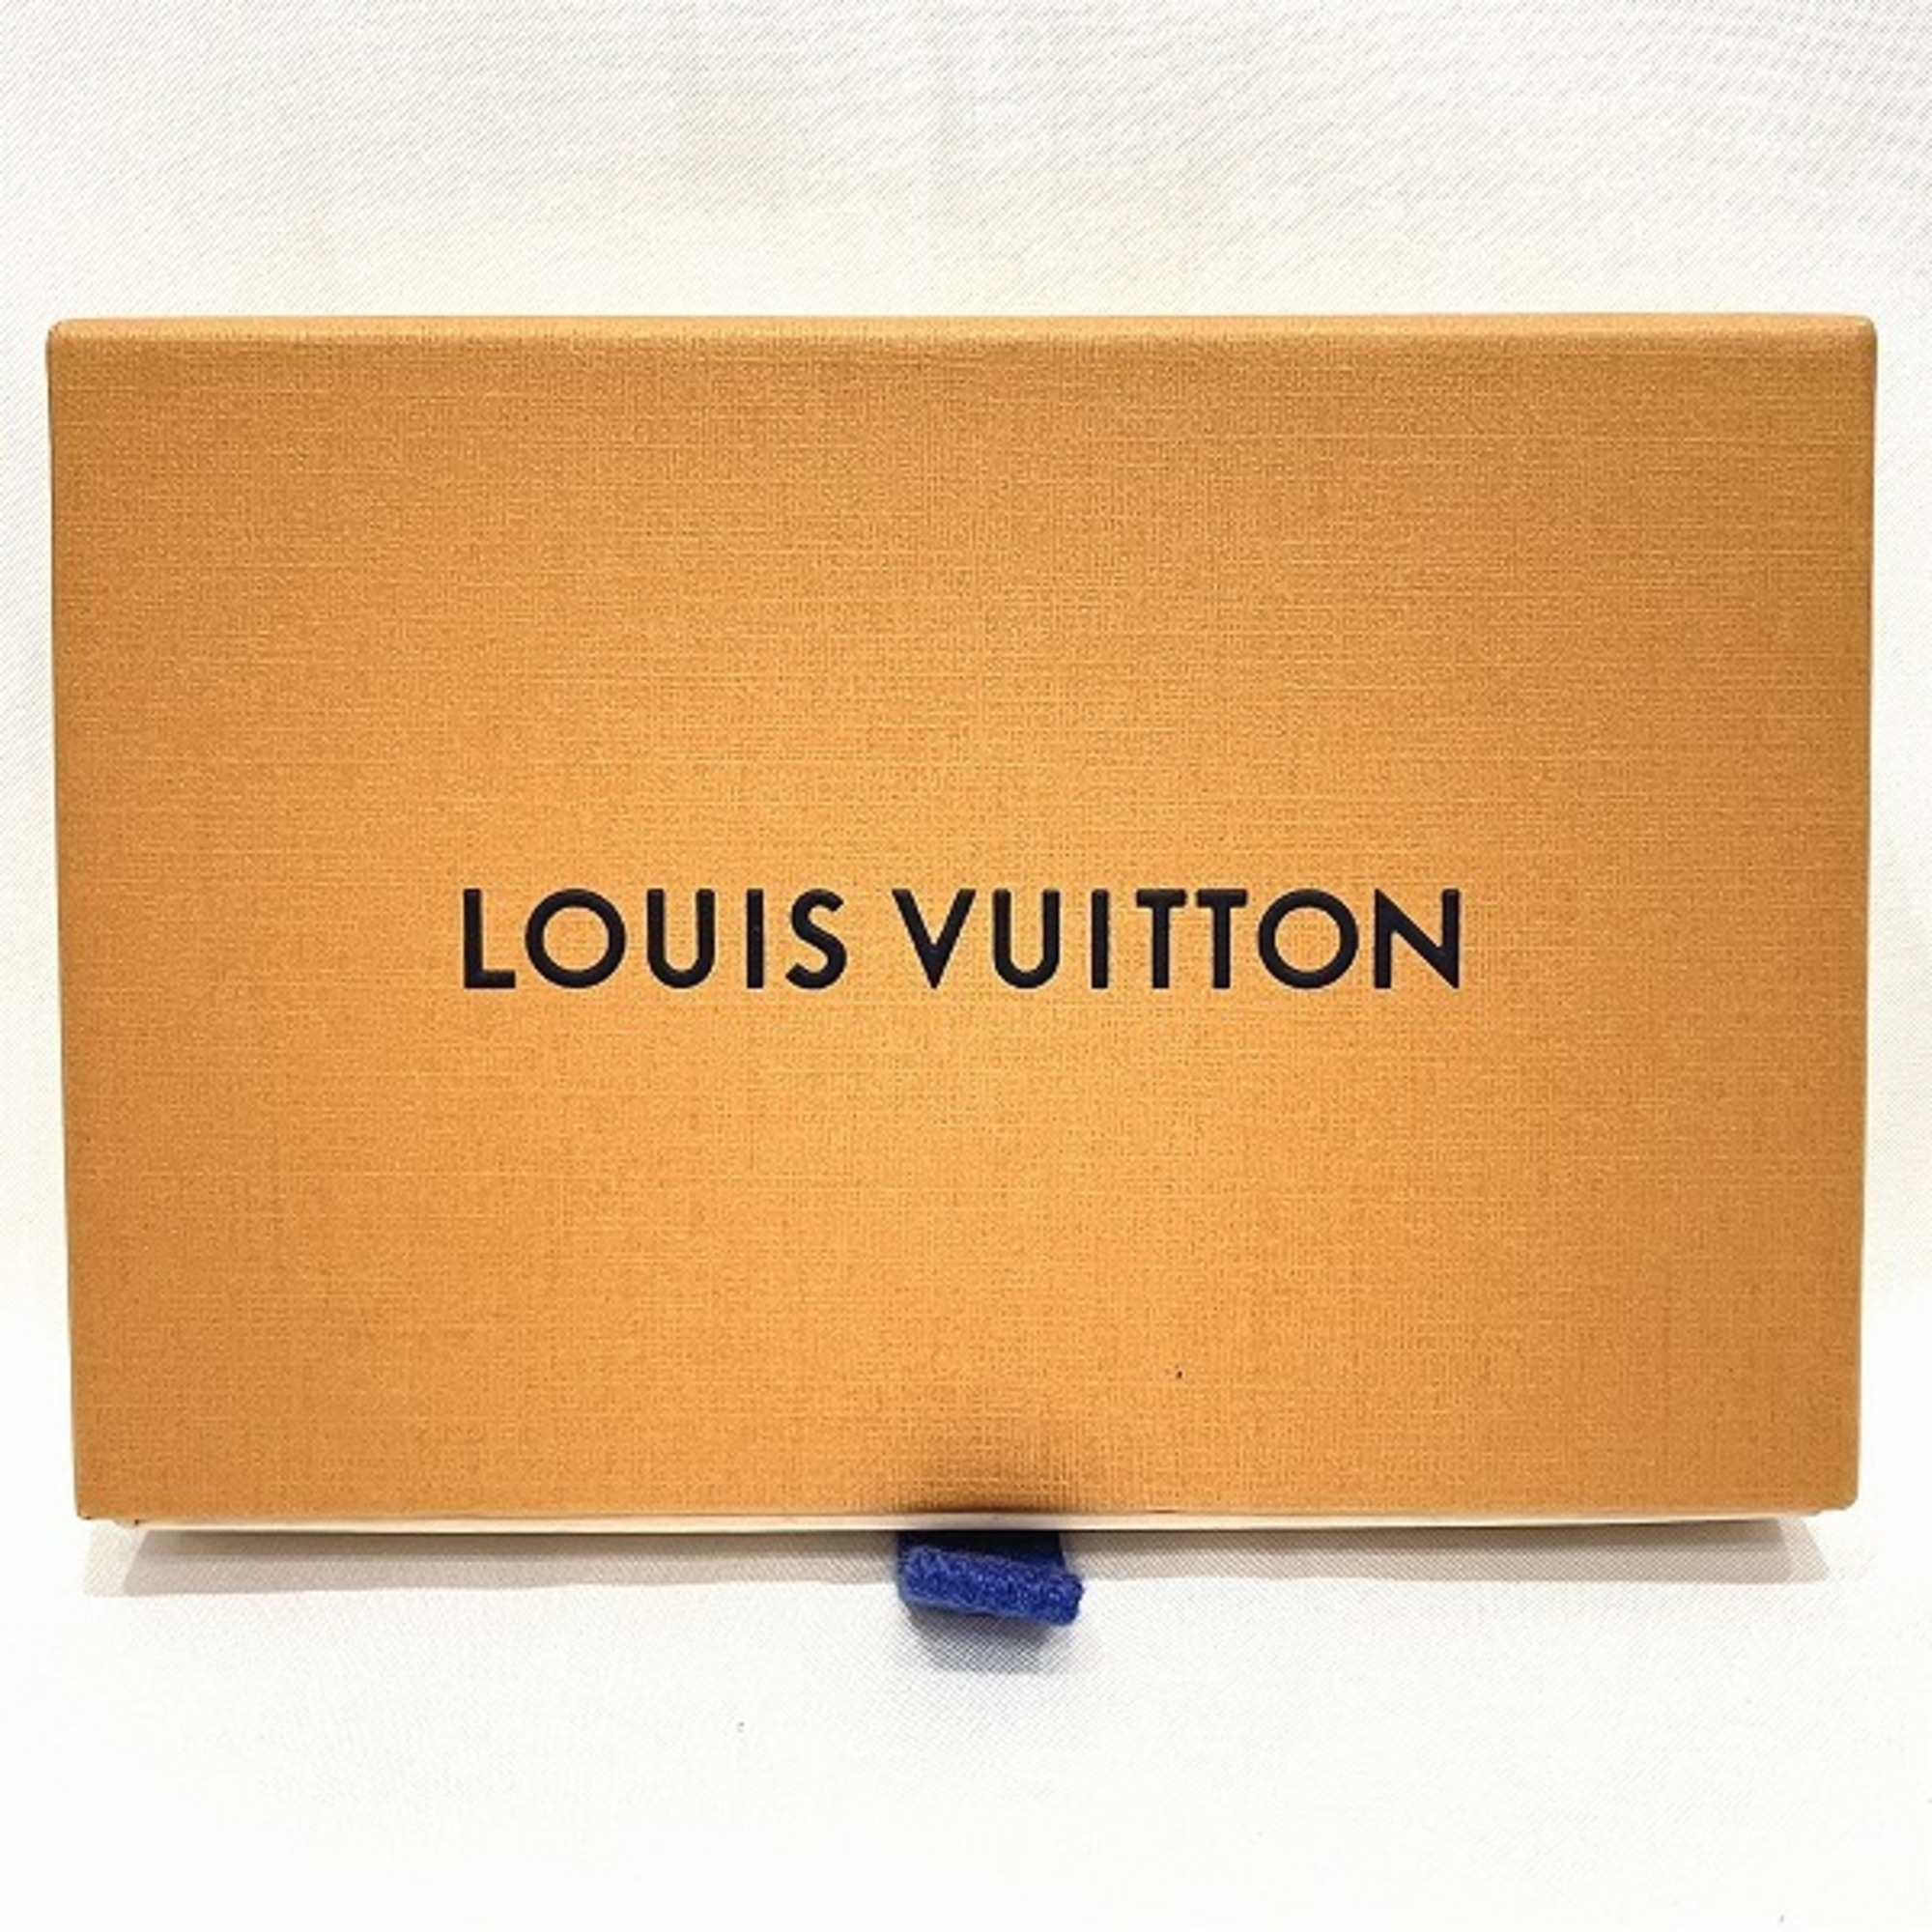 Louis Vuitton Porte Clé LV Nanogram M00547 Charm Brand Accessories Key Ring Keychain Women's